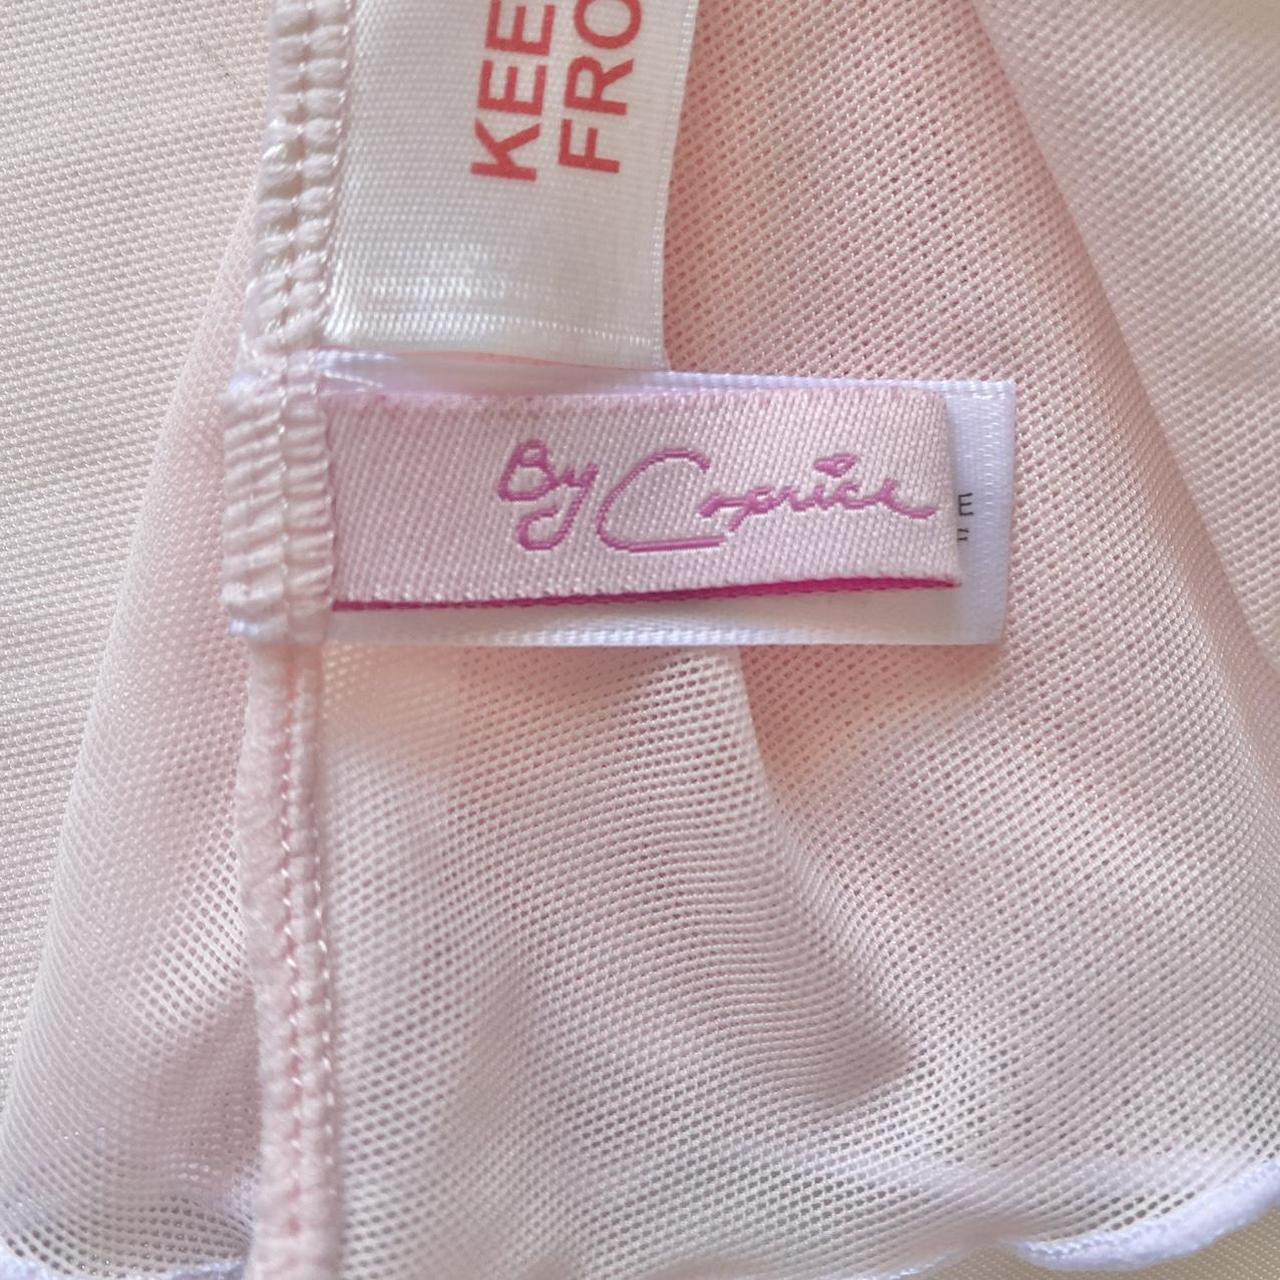 caprice - adorable pink mesh babydoll & thong set ♡... - Depop